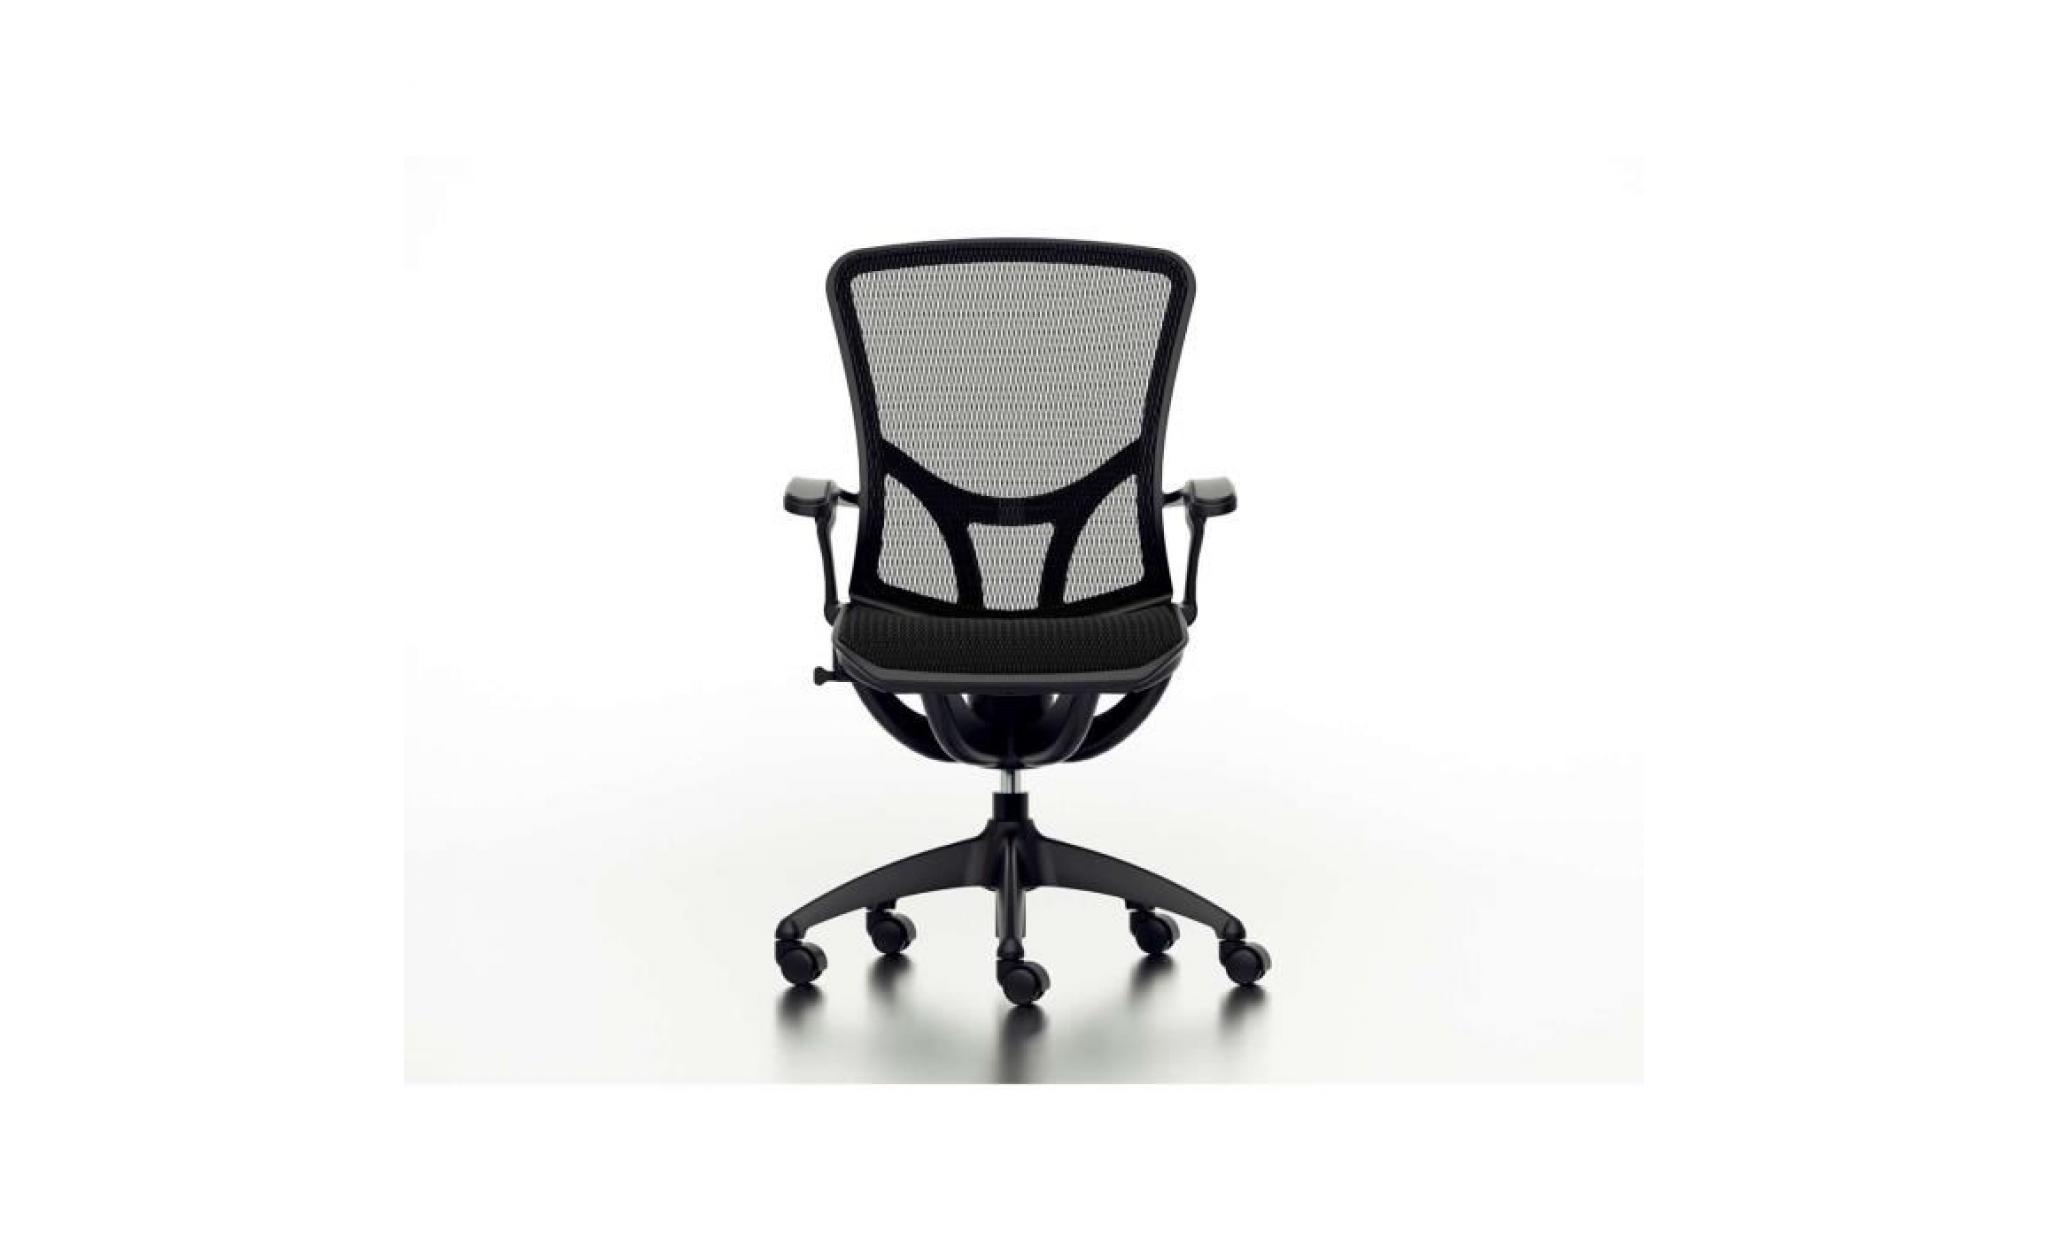 livinxs® fauteuil de bureau  officeline malmö , colori noir (66337) pas cher